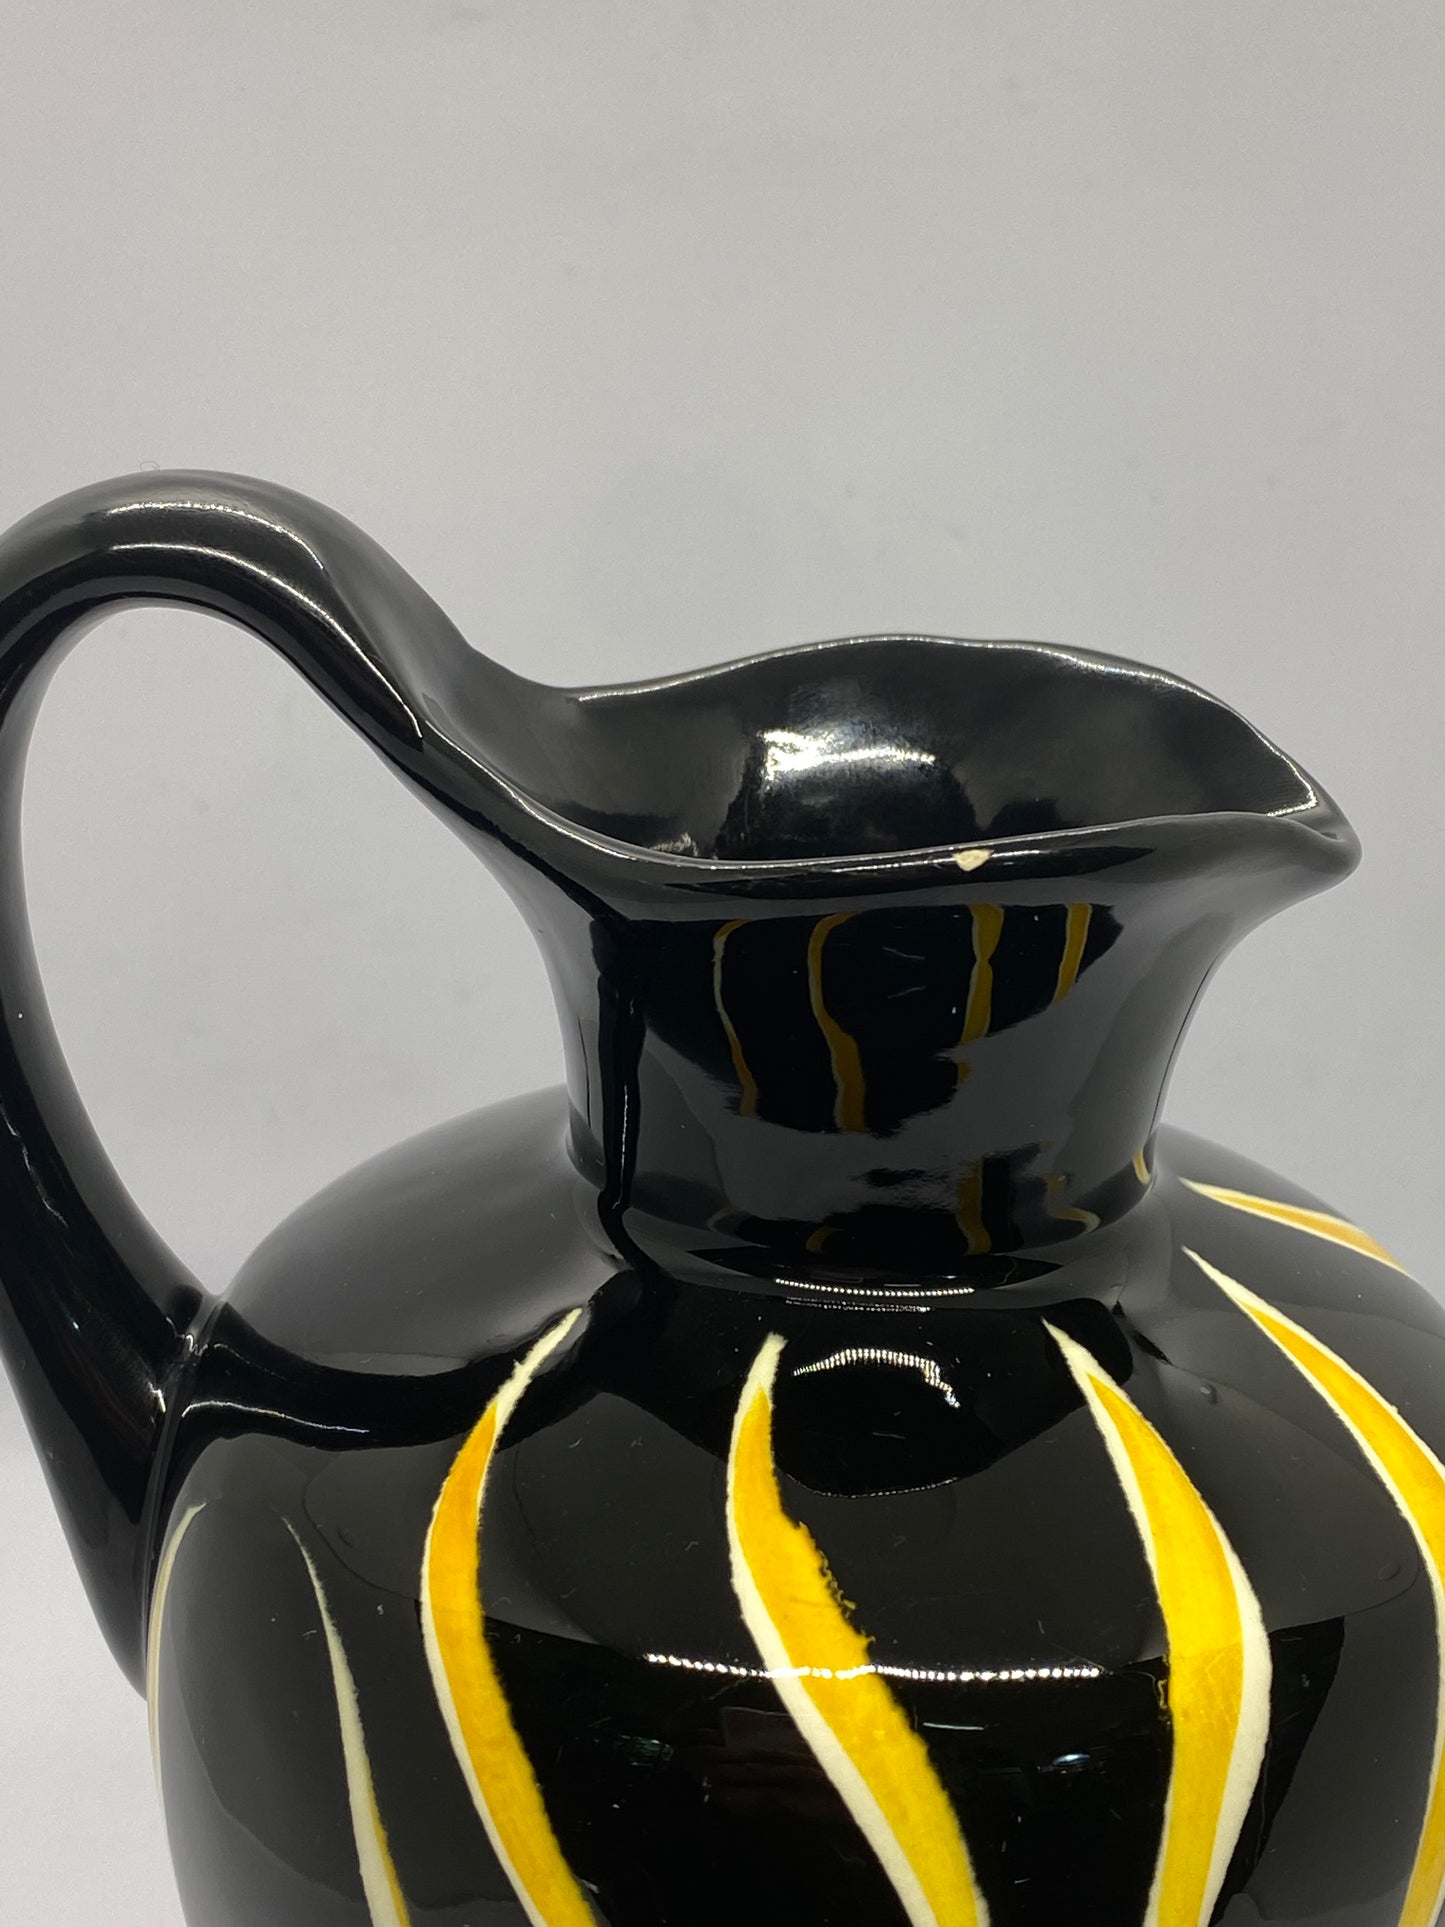 20 世纪 50 年代中期，Anneliese Beckh 为 Schmider Keramik 设计了黑黄色底格里斯河水罐